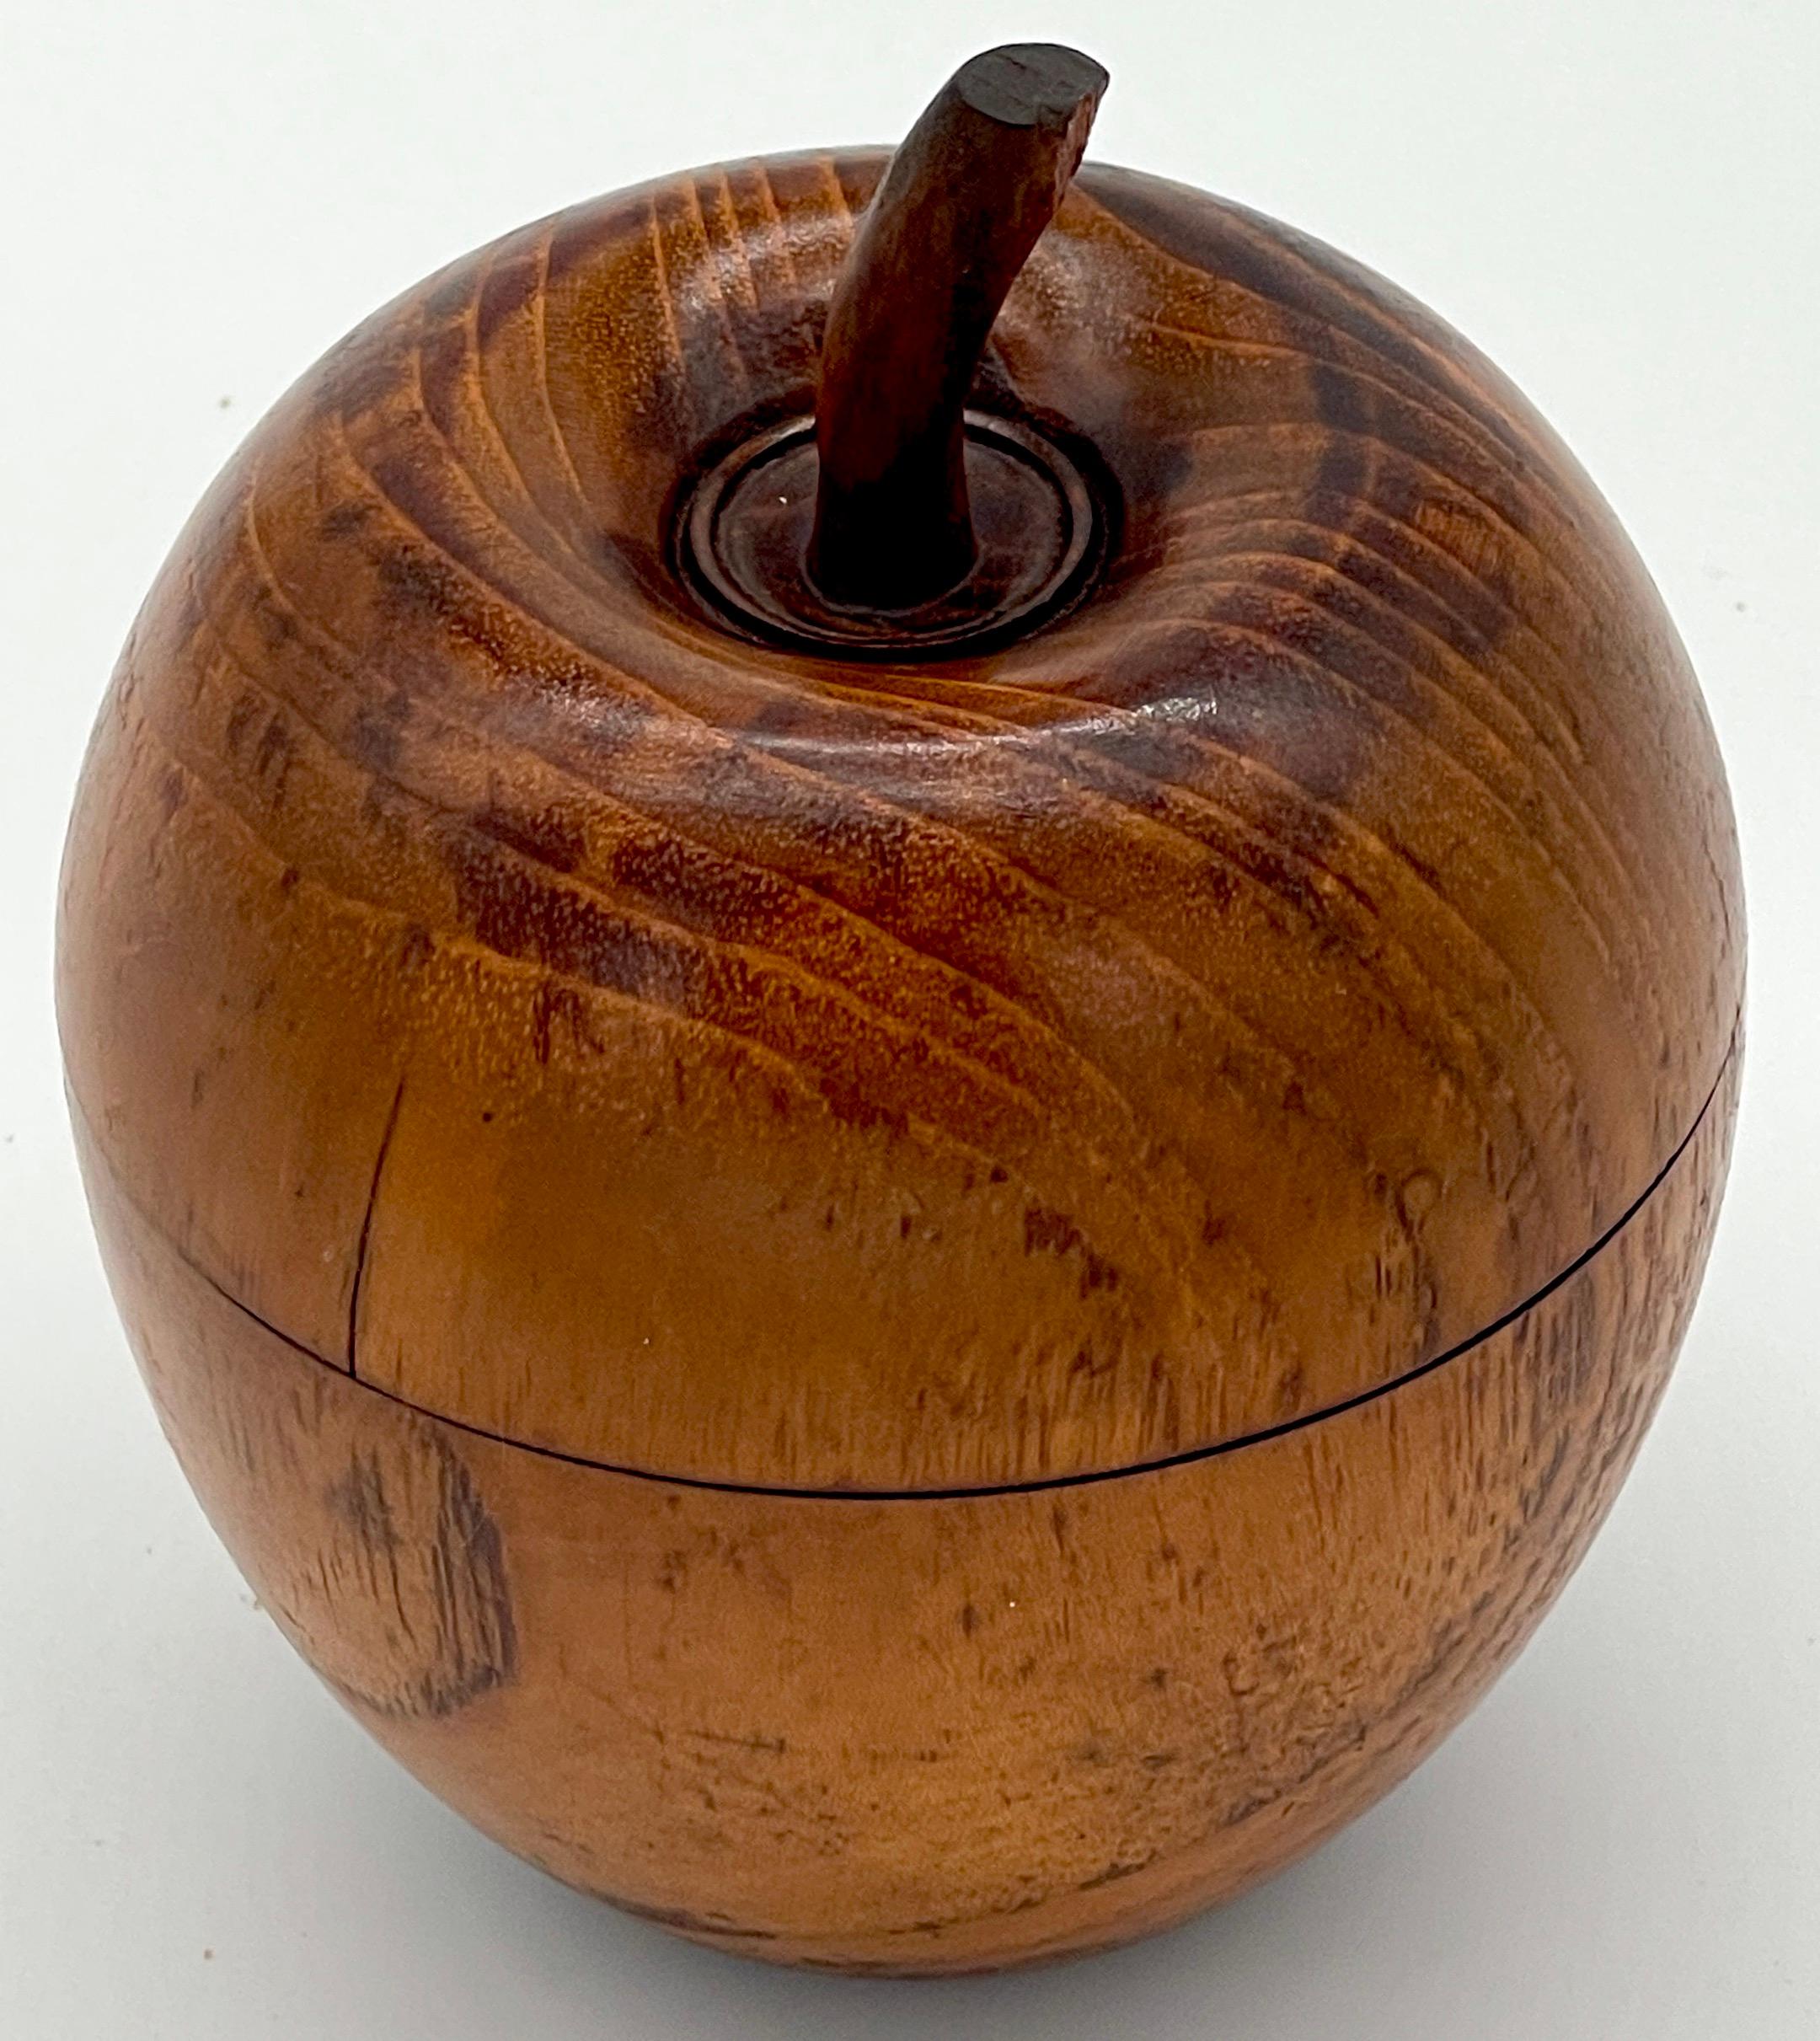 Boîte à thé américaine à motif de pomme de cervidé, années 1900

Boîte à thé américaine à motif de pomme Treen datant du début du 20e siècle, un charmant témoignage de l'art de son époque. Méticuleusement sculptée dans le bois, cette charmante pièce